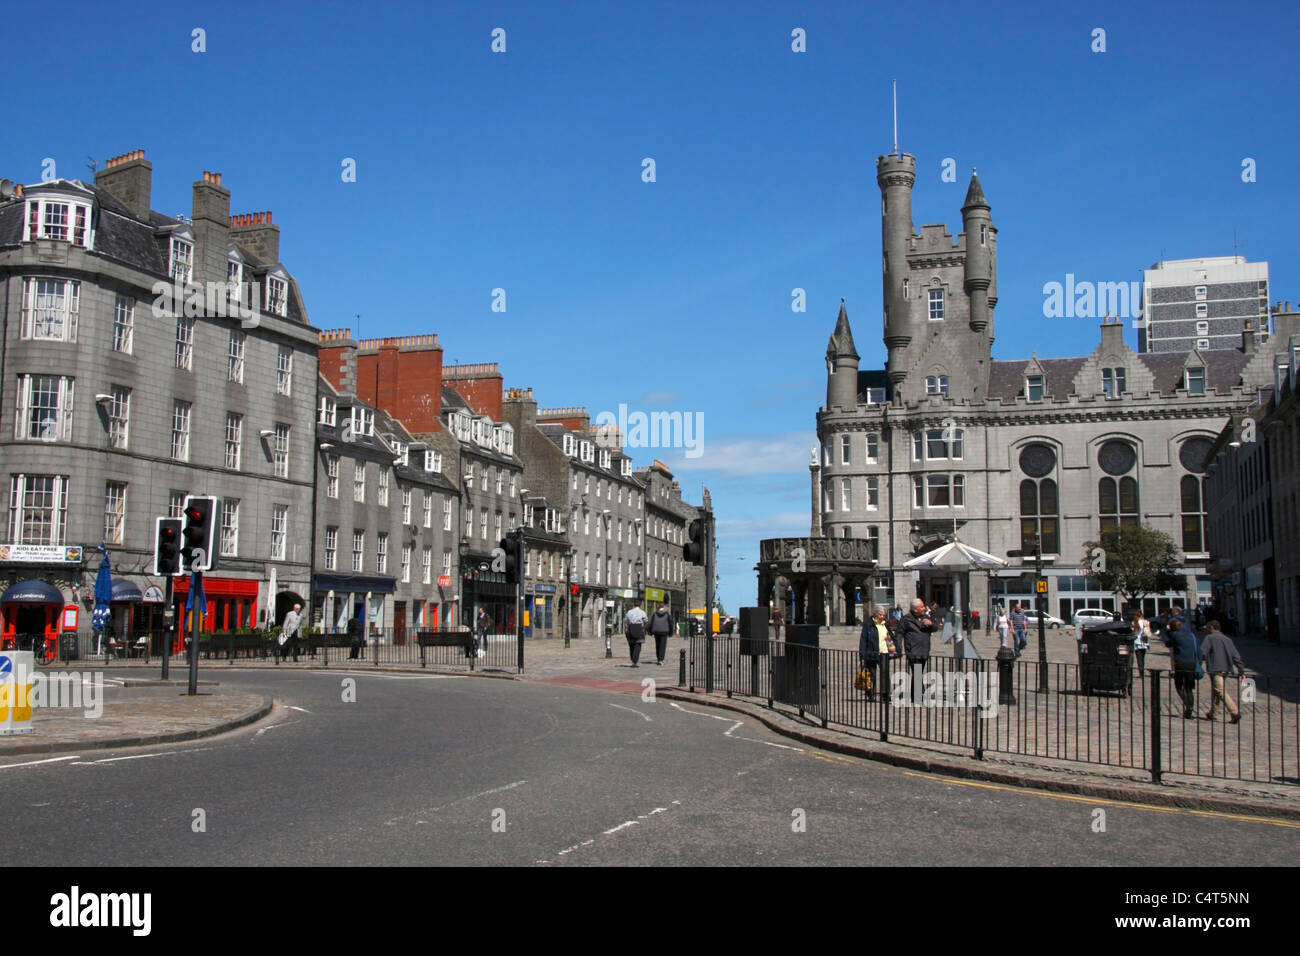 Centre-ville d'Aberdeen. Castlegate, avec Mercat Cross et de l'Armée du Salut Citadelle sur la droite, rue du château sur la gauche. Banque D'Images